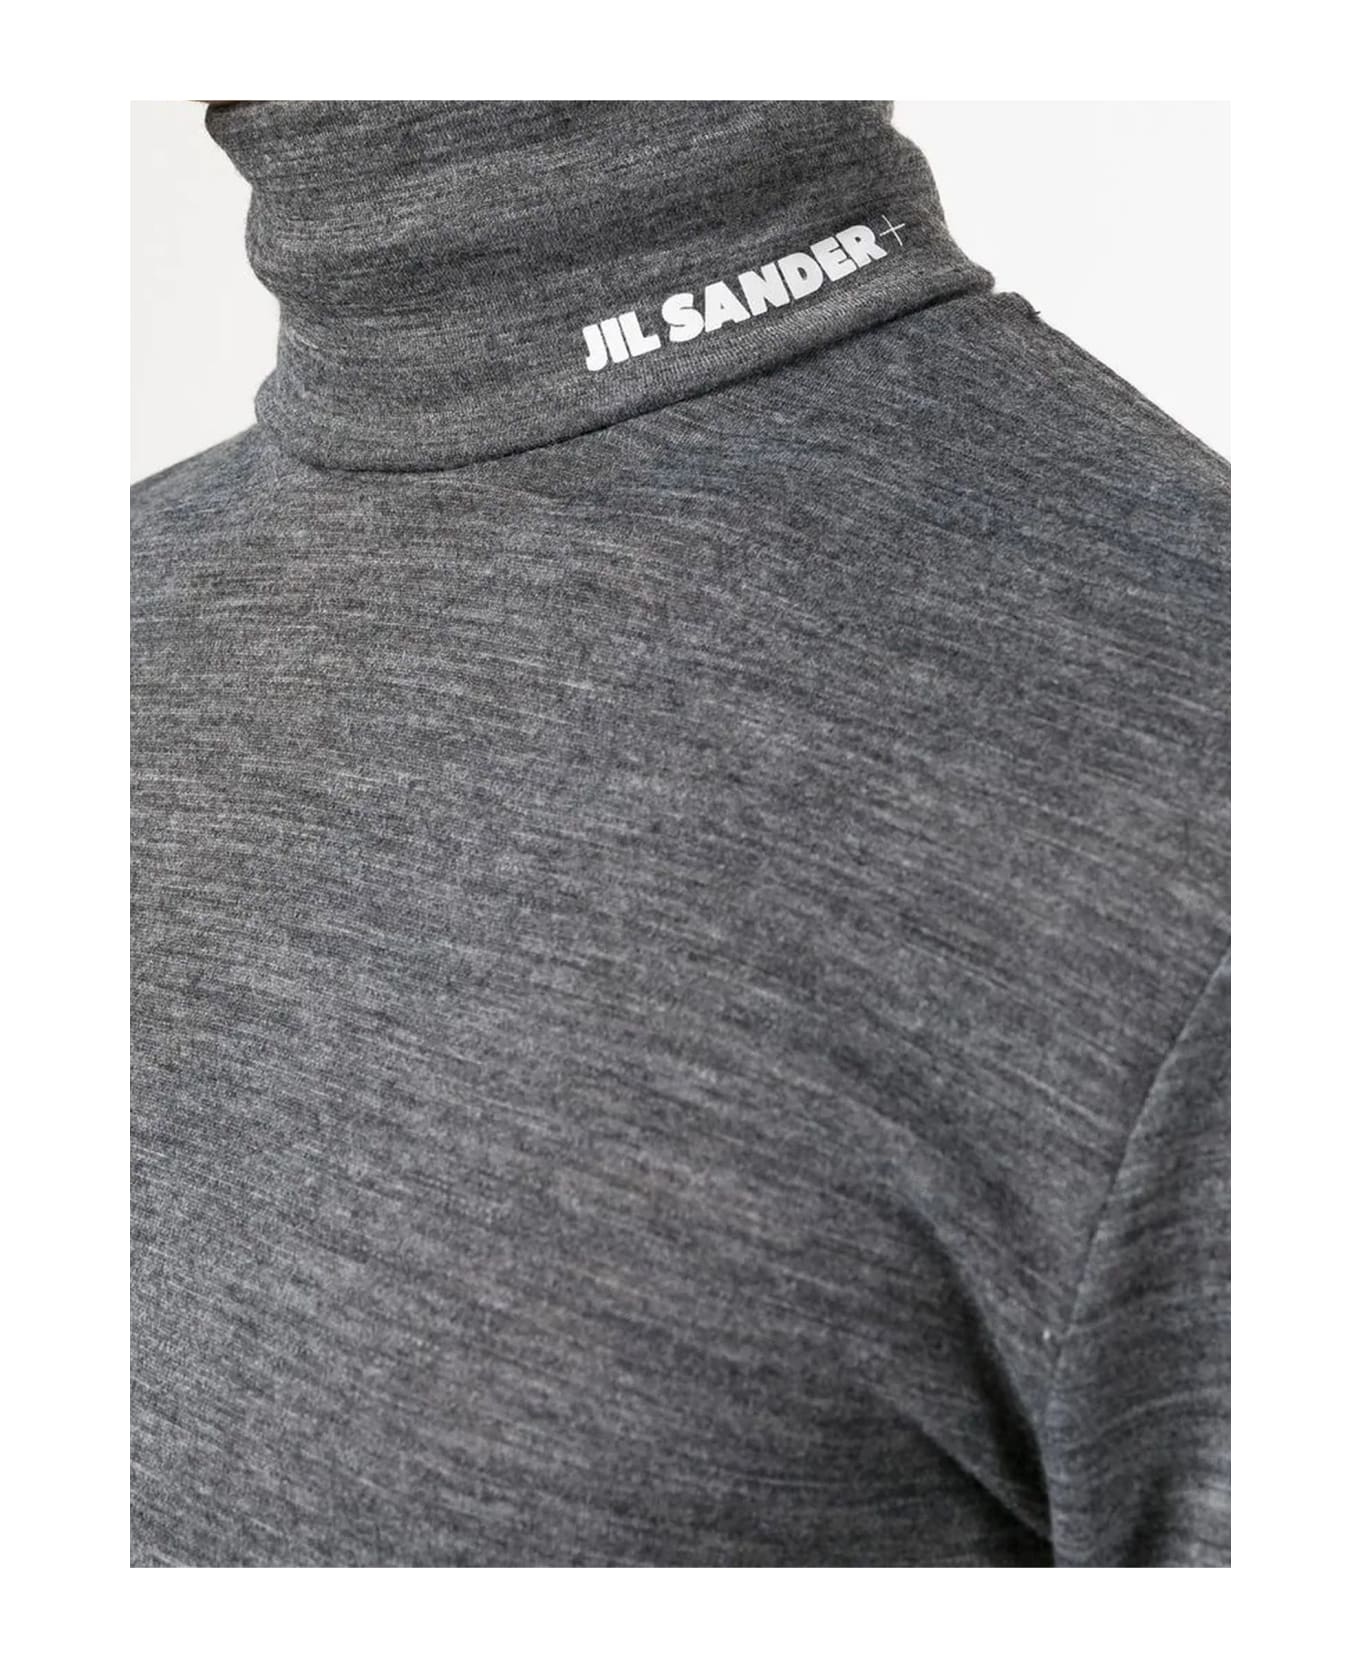 Jil Sander Melange Grey Polyester Blend Sweater - Grey